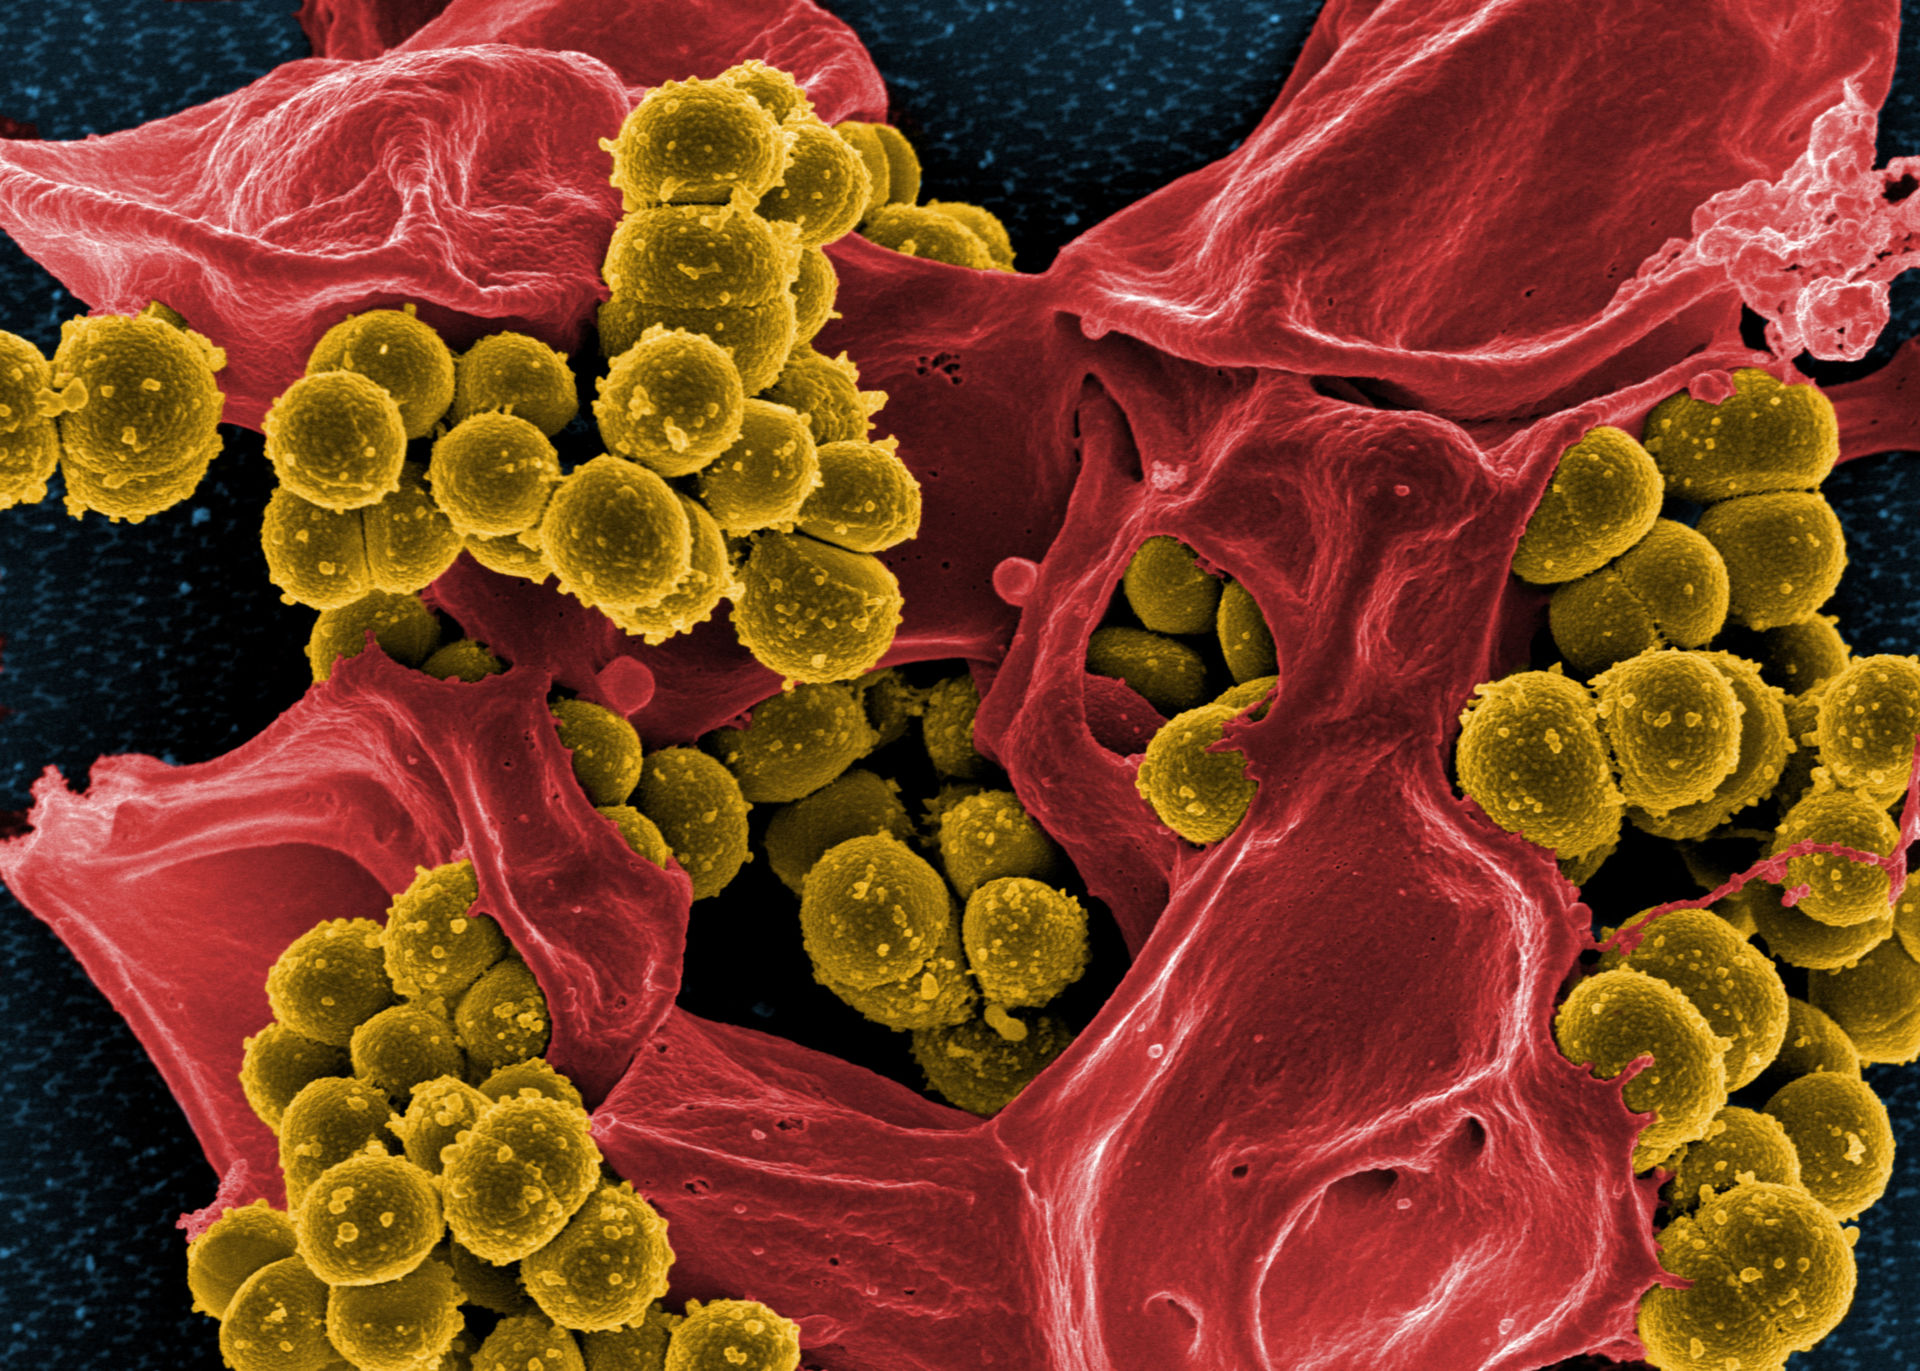 Mikroskopische Aufnahme von Methicillin-resistenten Staphylococcus aureus (MRSA)